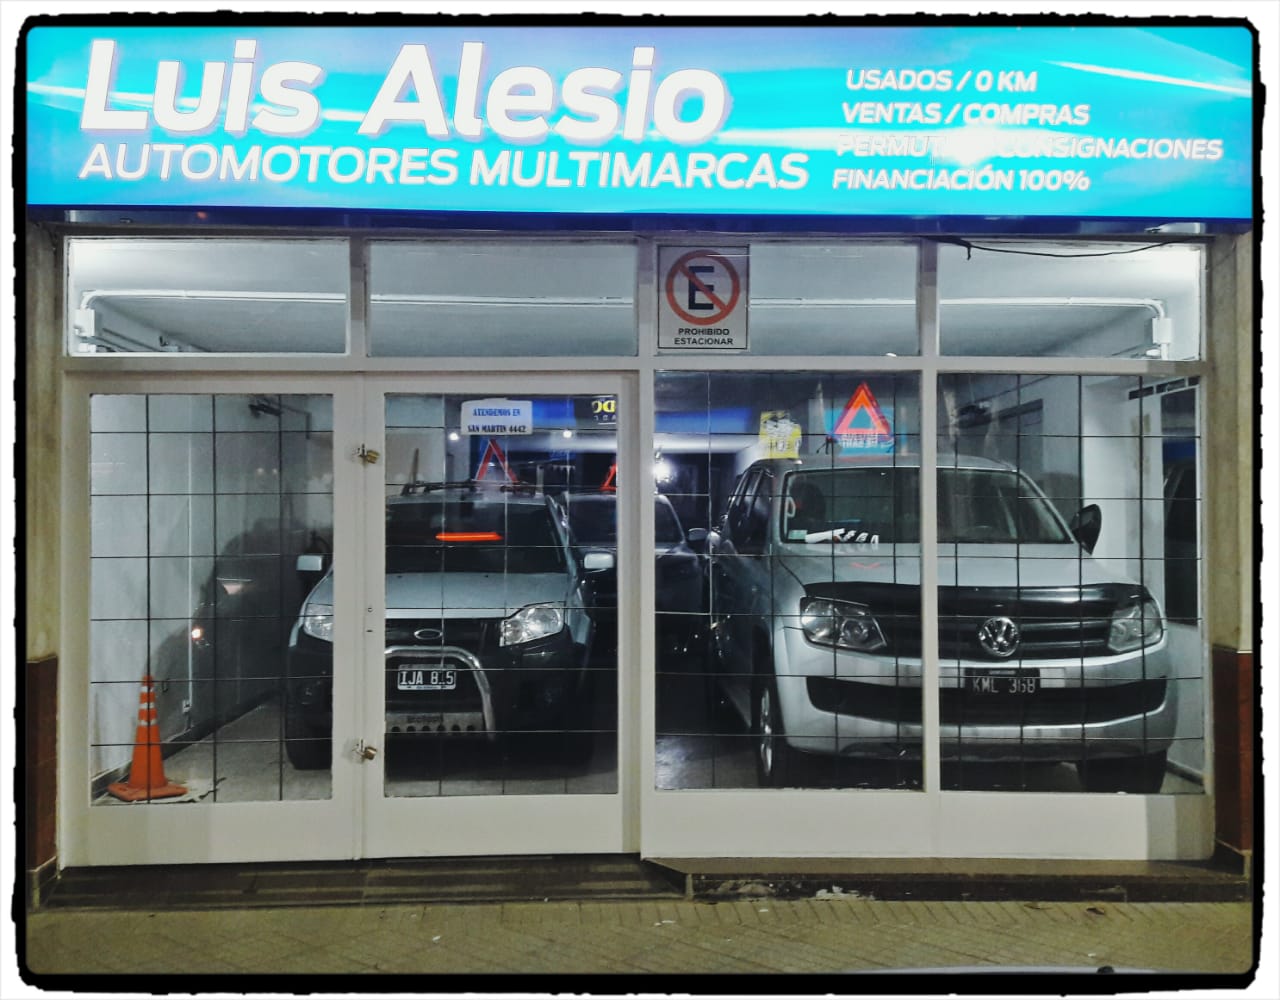 Automotores Luis Alesio